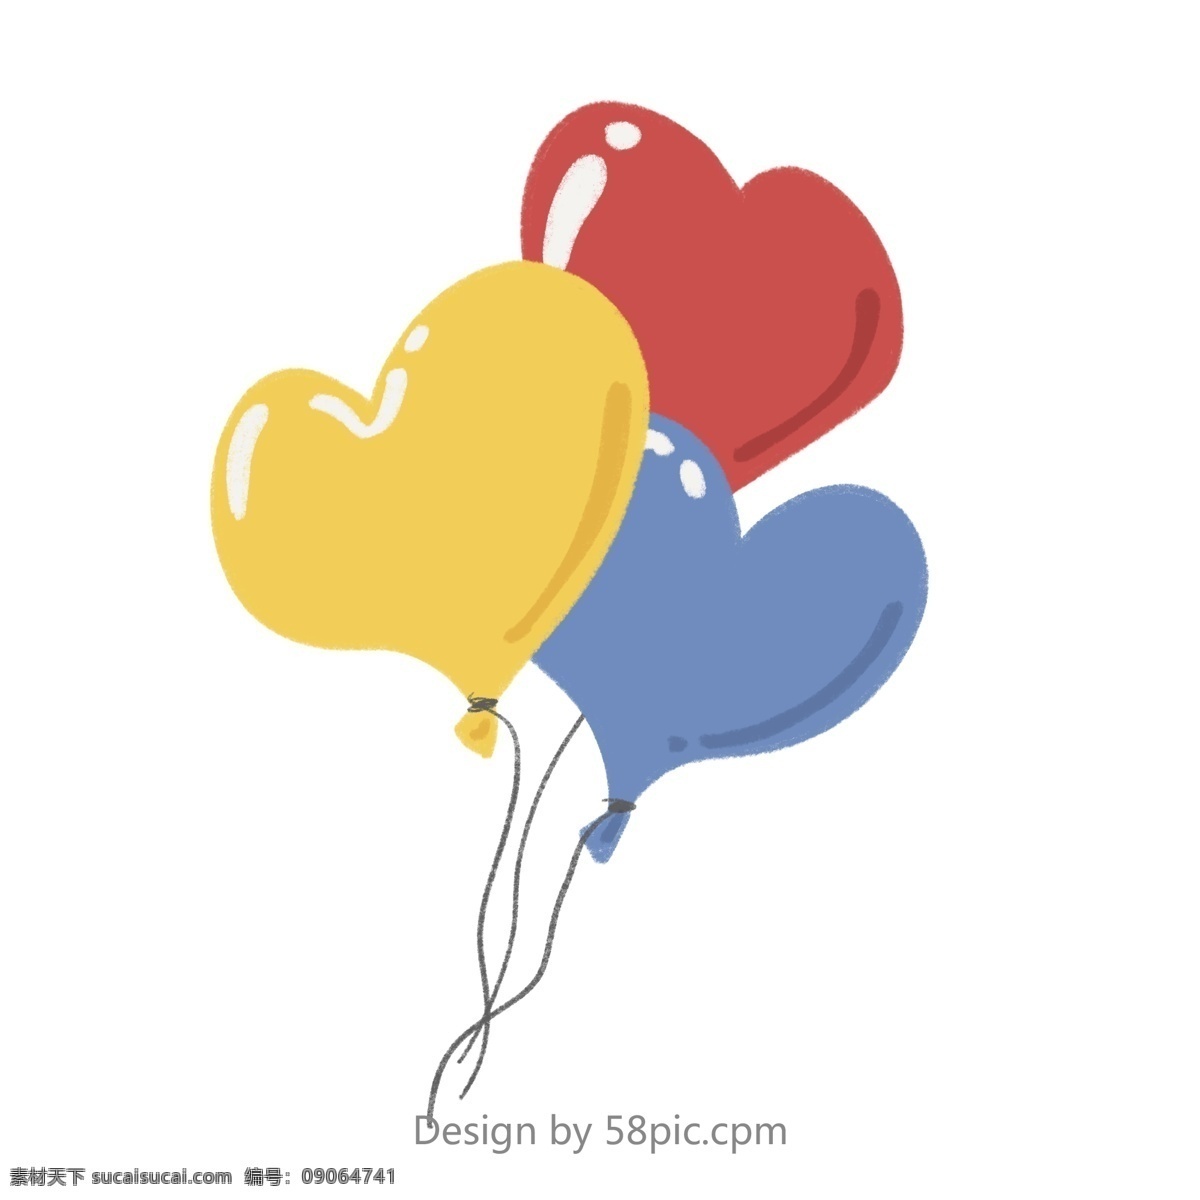 手绘 红 黄蓝 心形 气球 派对 庆祝 礼物 娱乐 聚会 生日